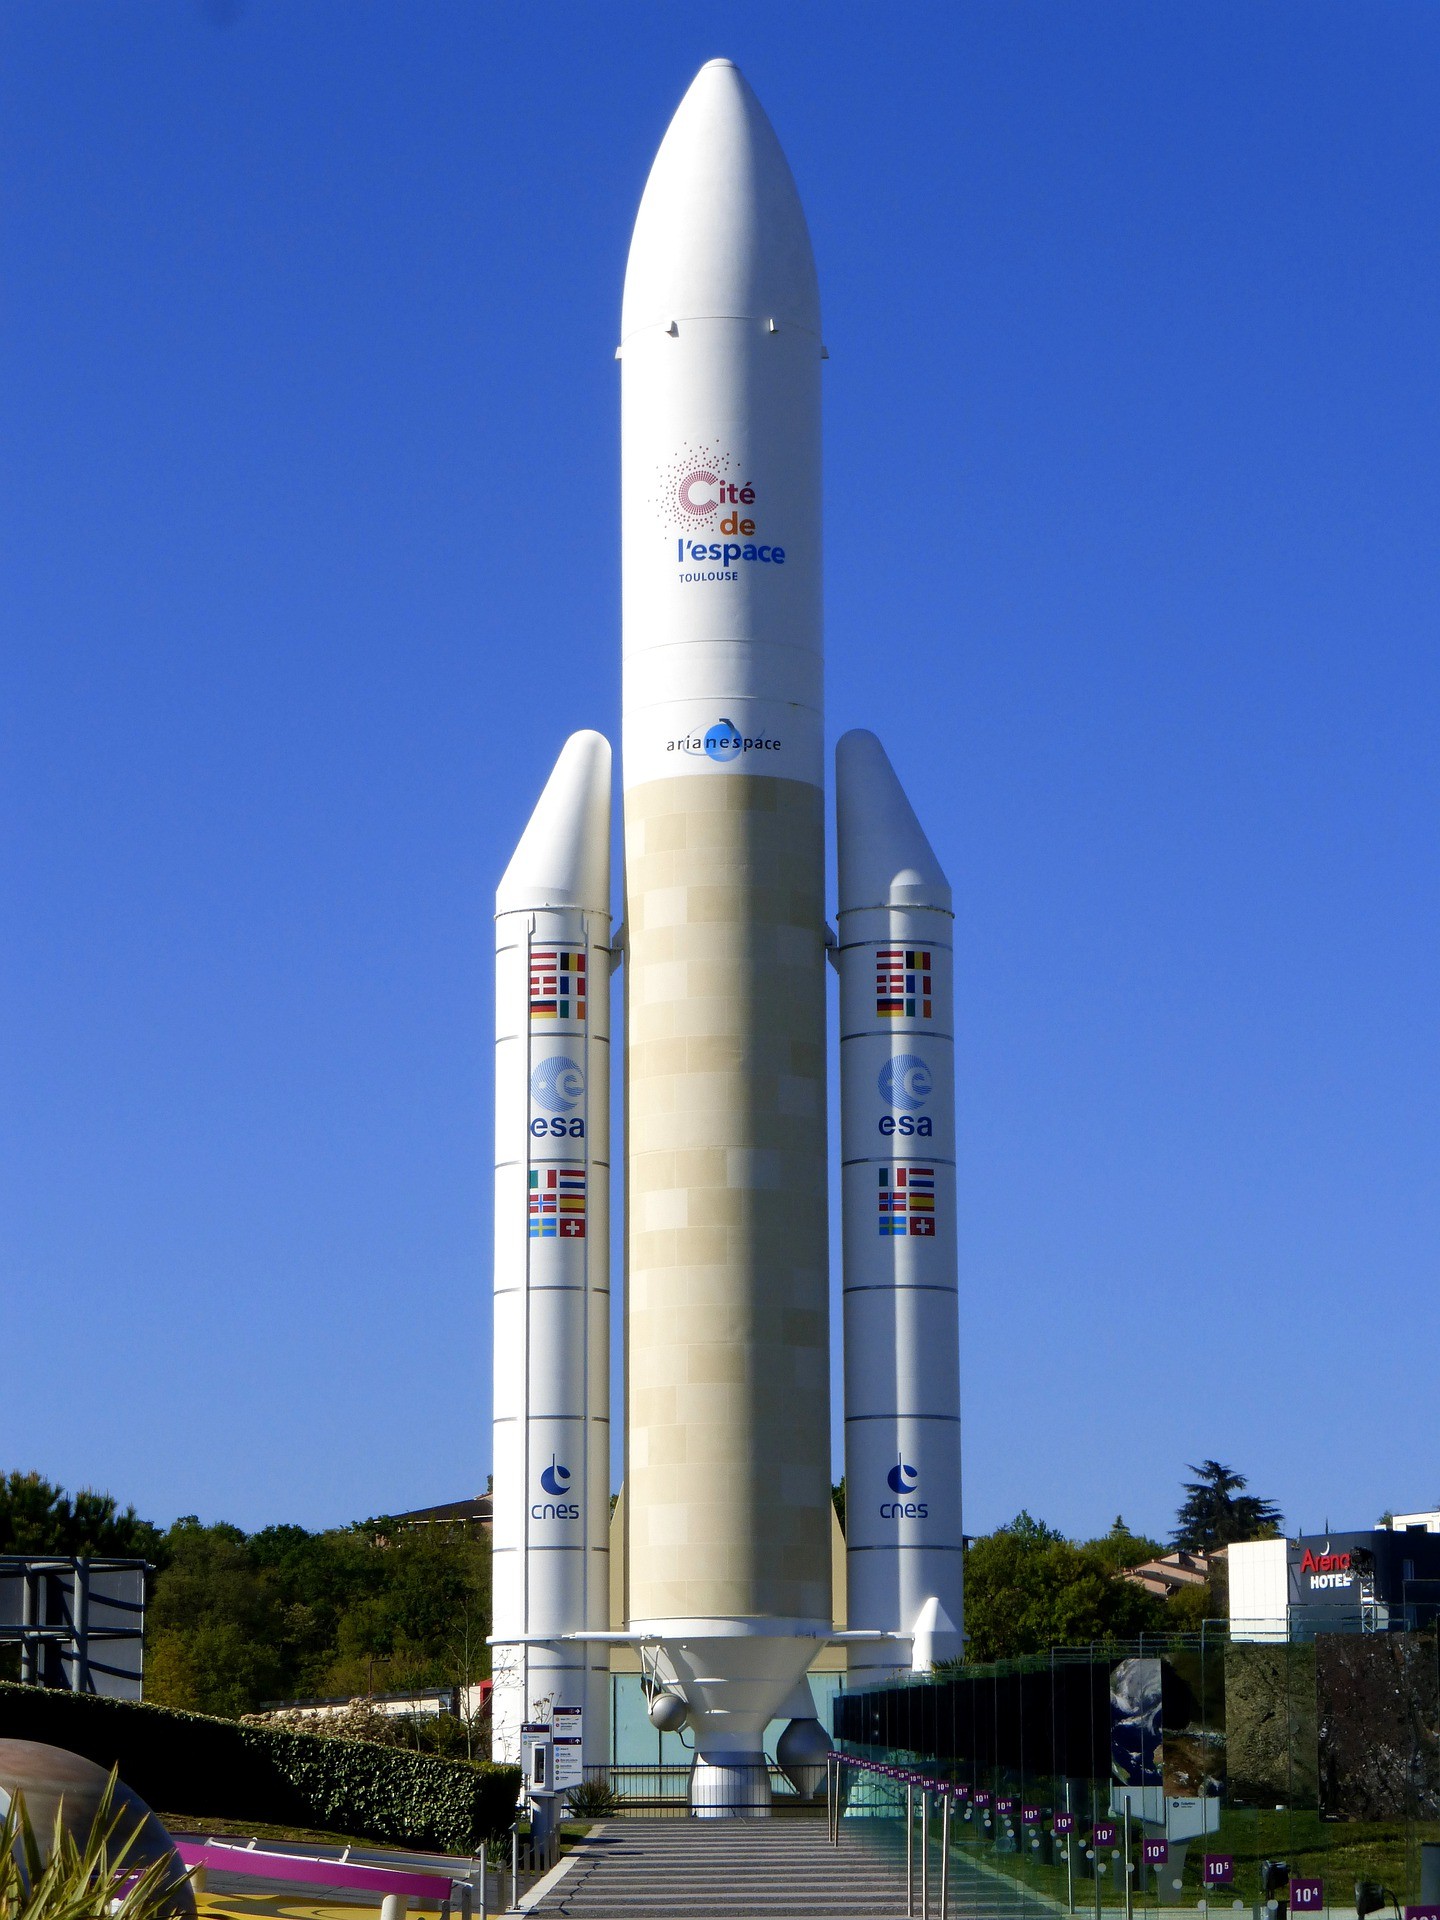 ariane-rocket-launcher-cite-de-lescape-toulouse